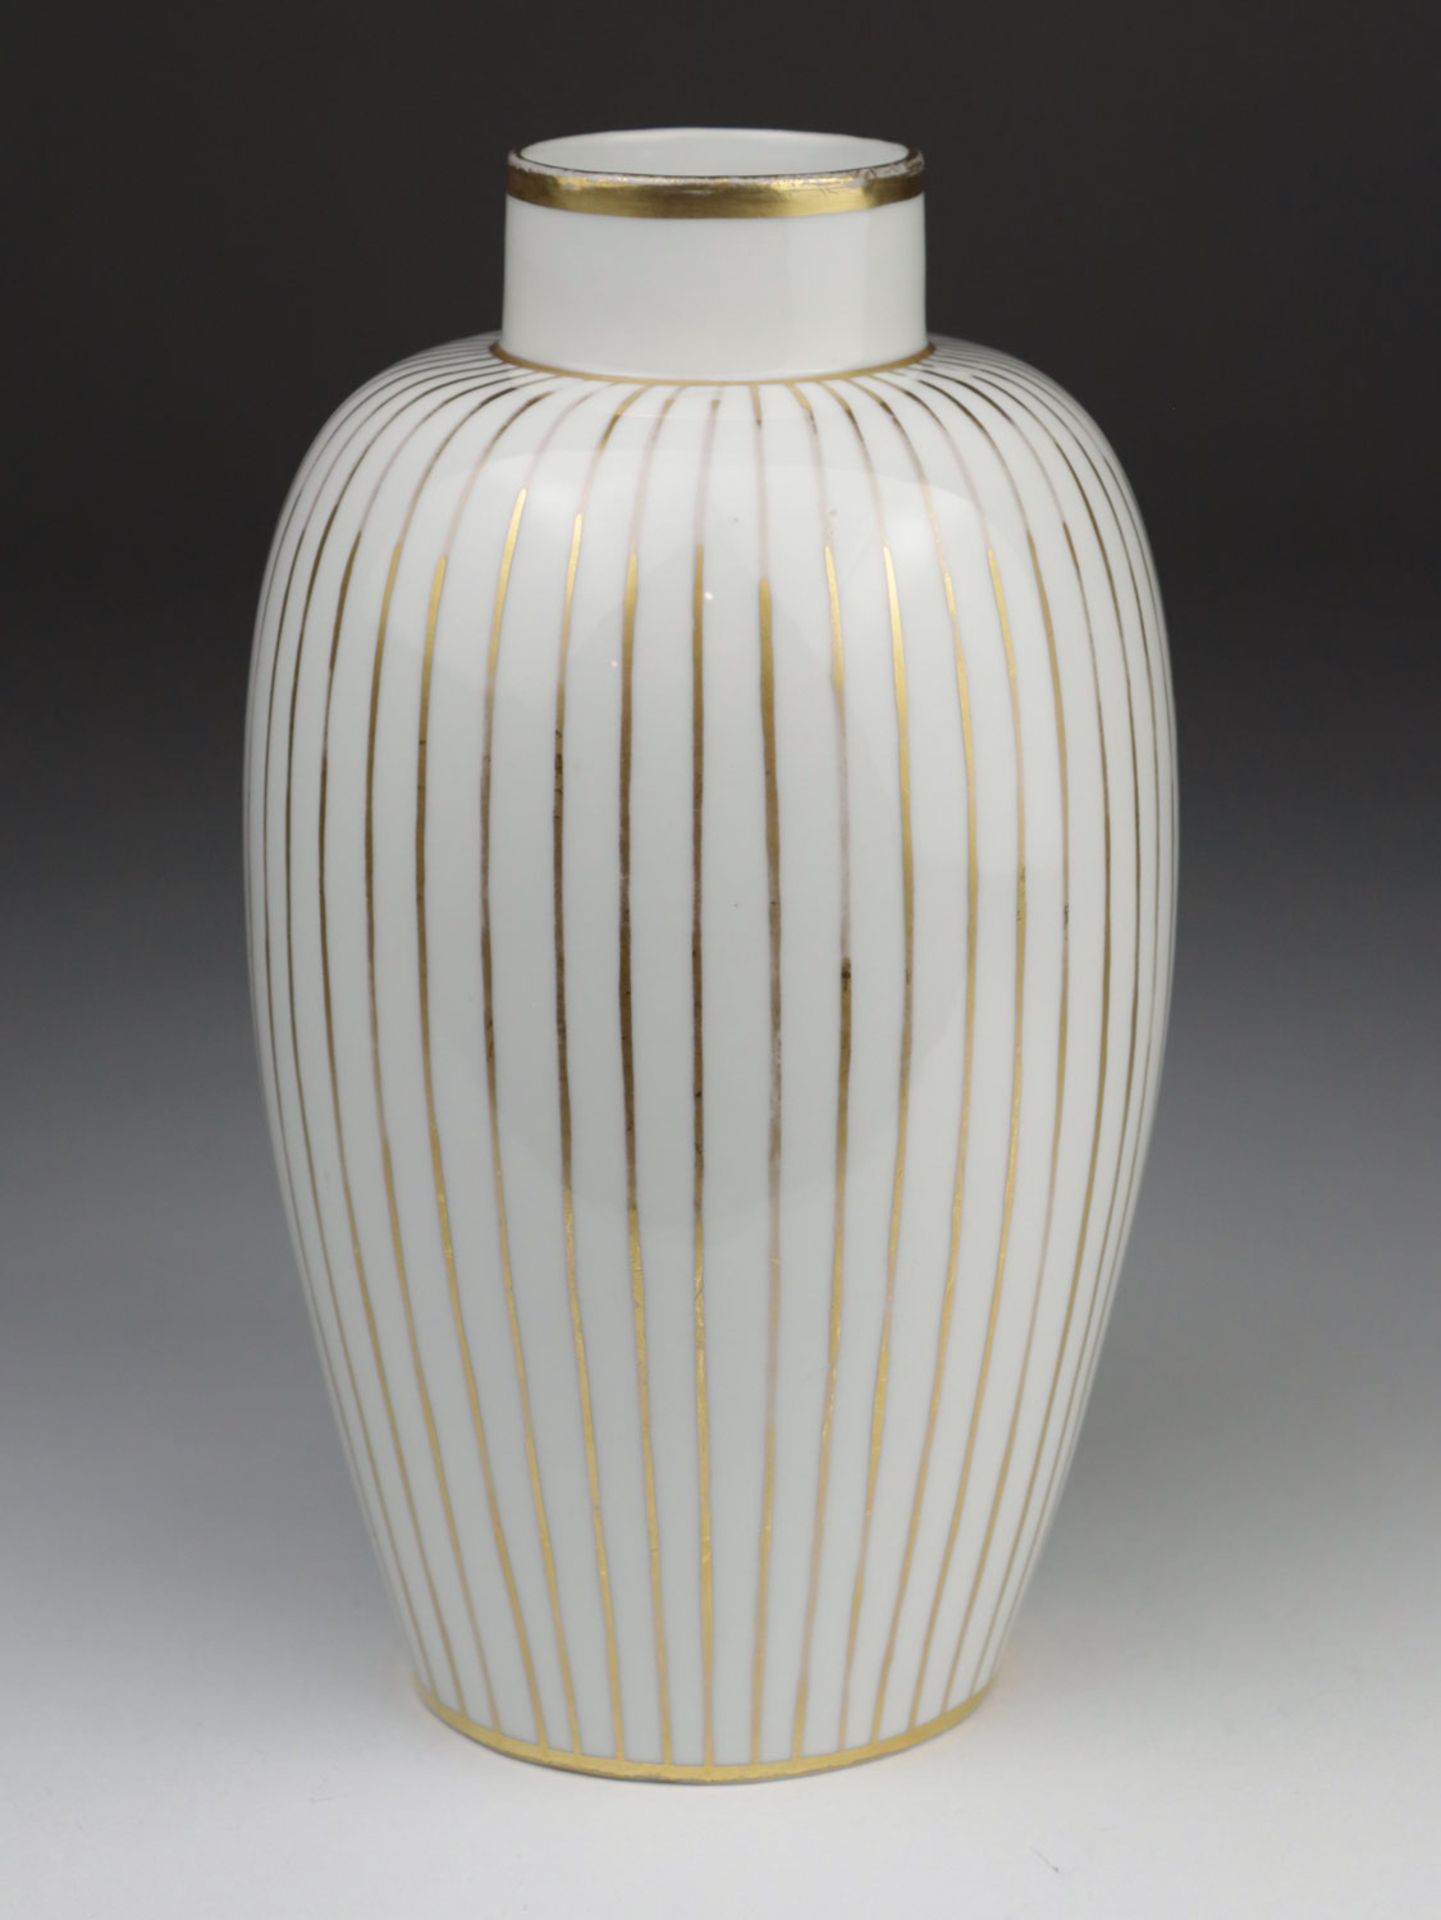 Heubach - Vase - Image 4 of 5